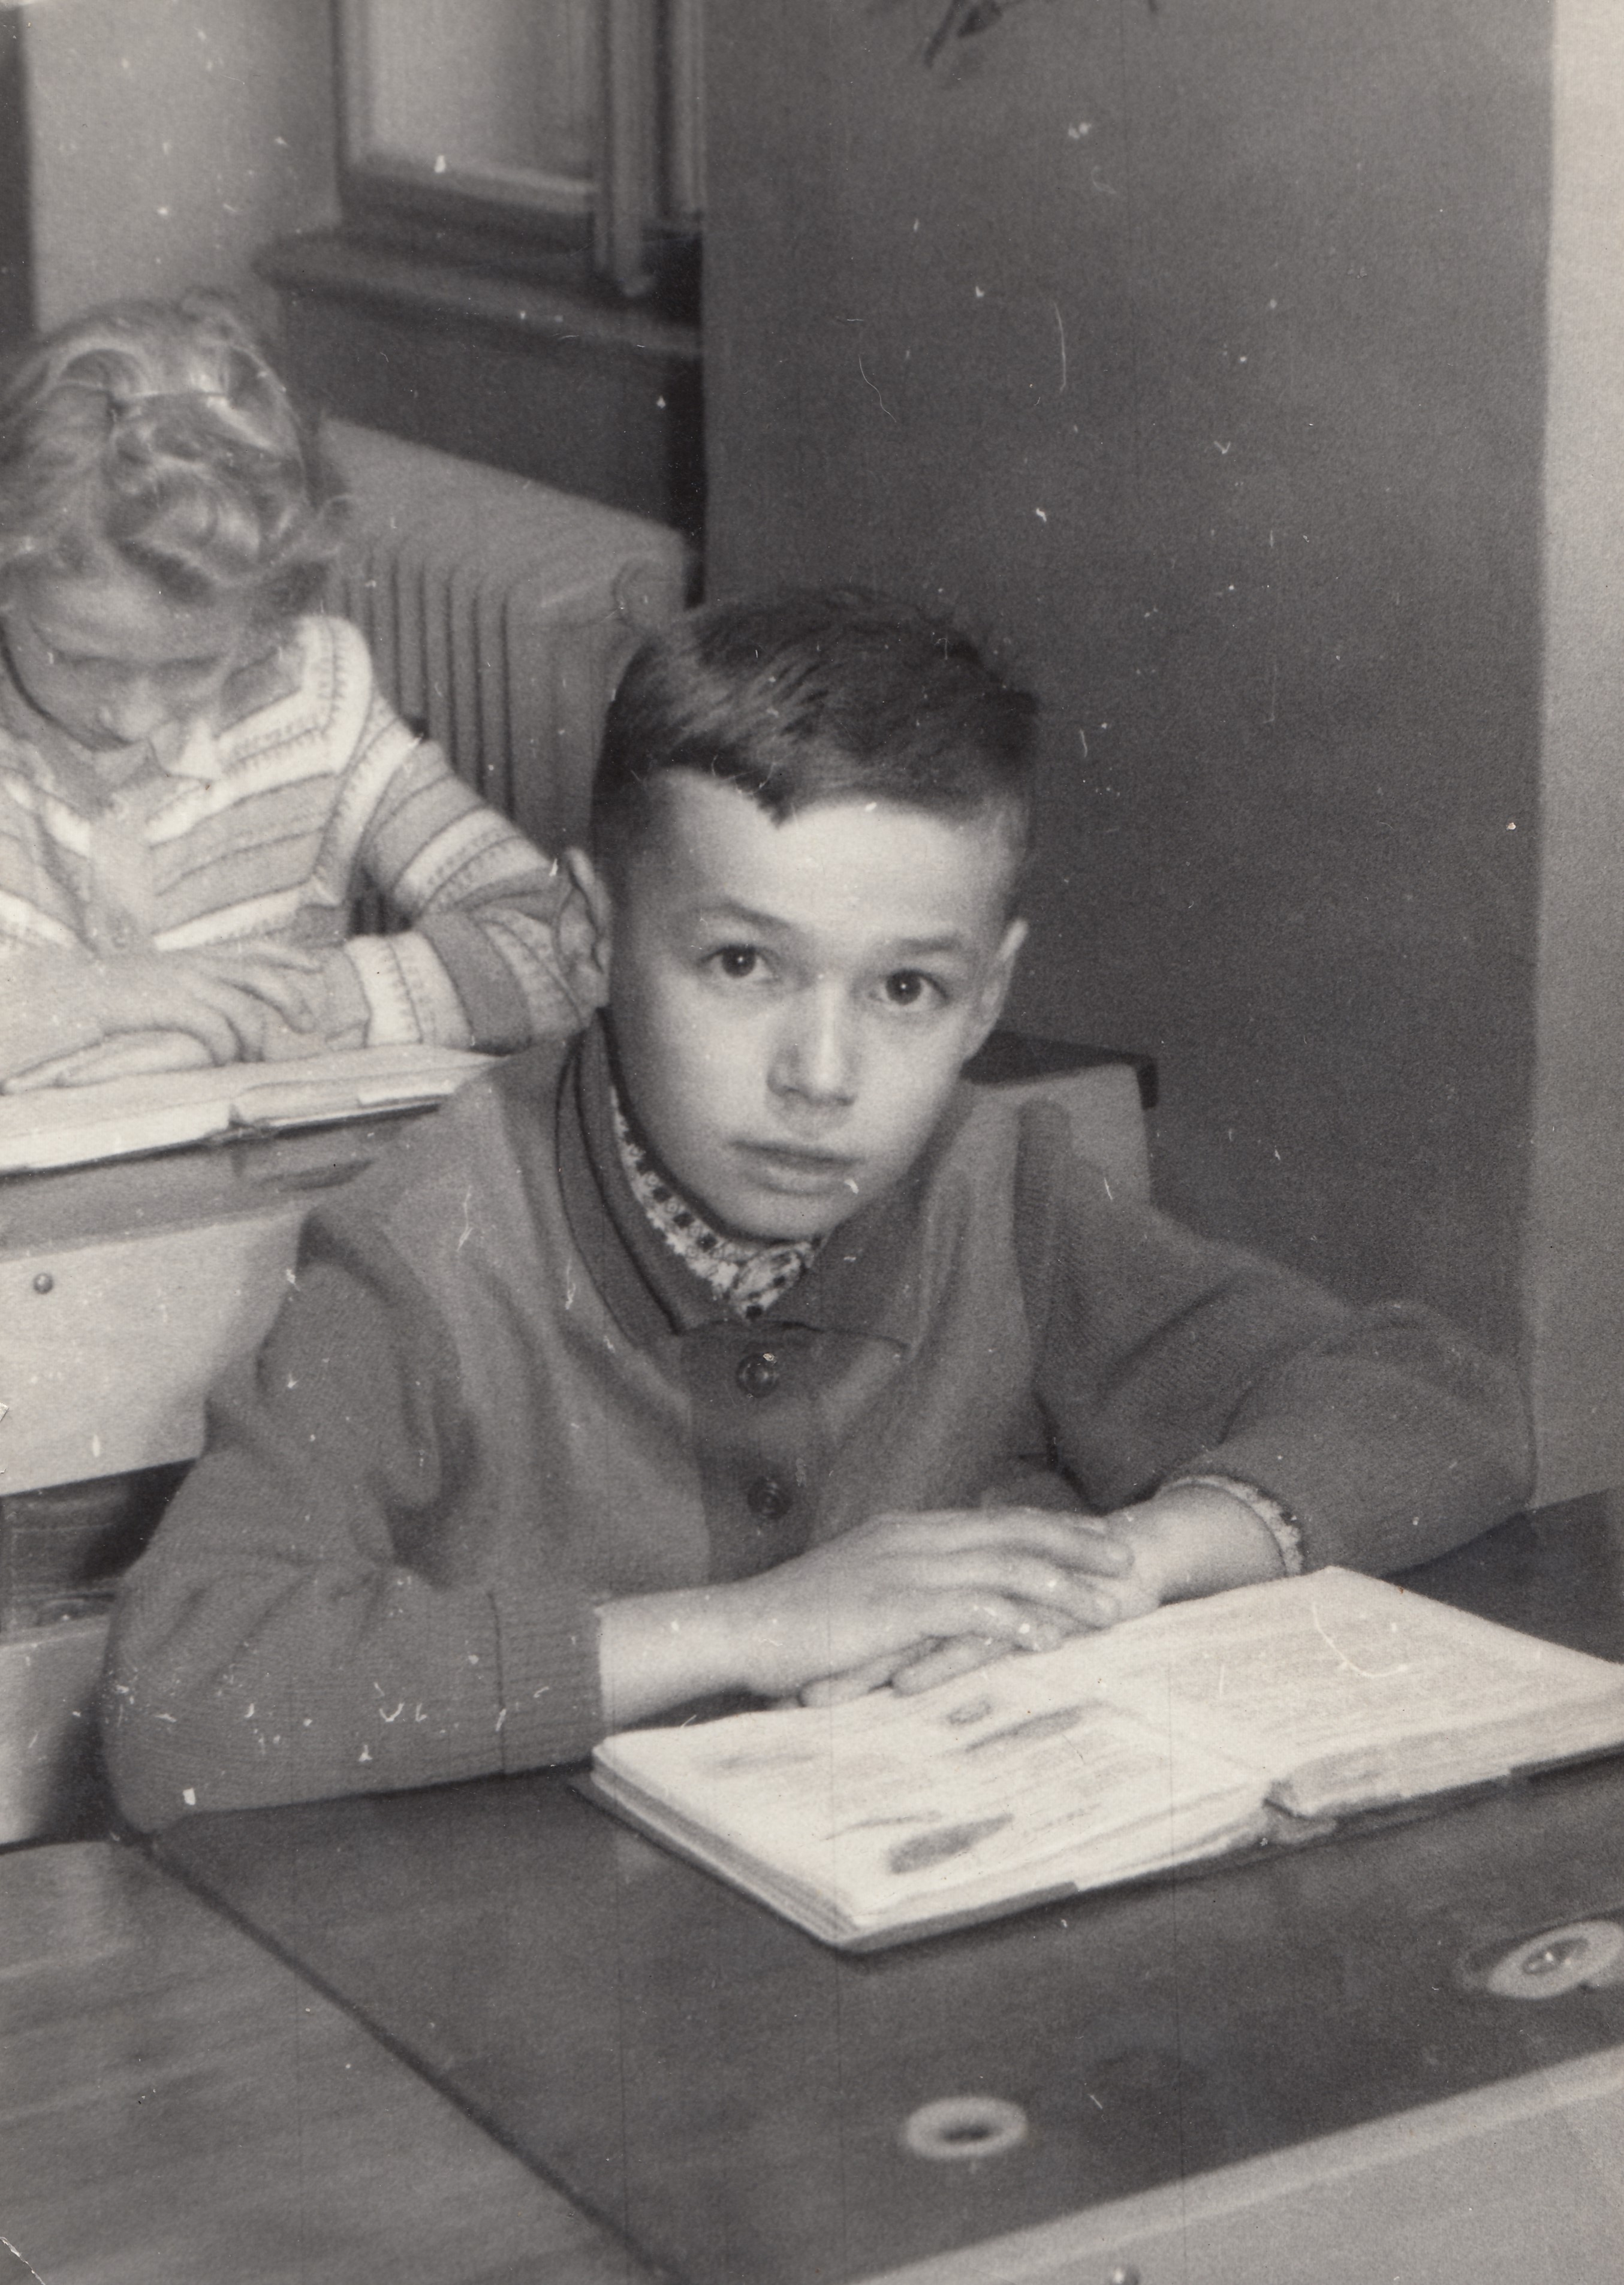 Pamětník v 2. nebo 3 třídě, Polička, cca 1962-63